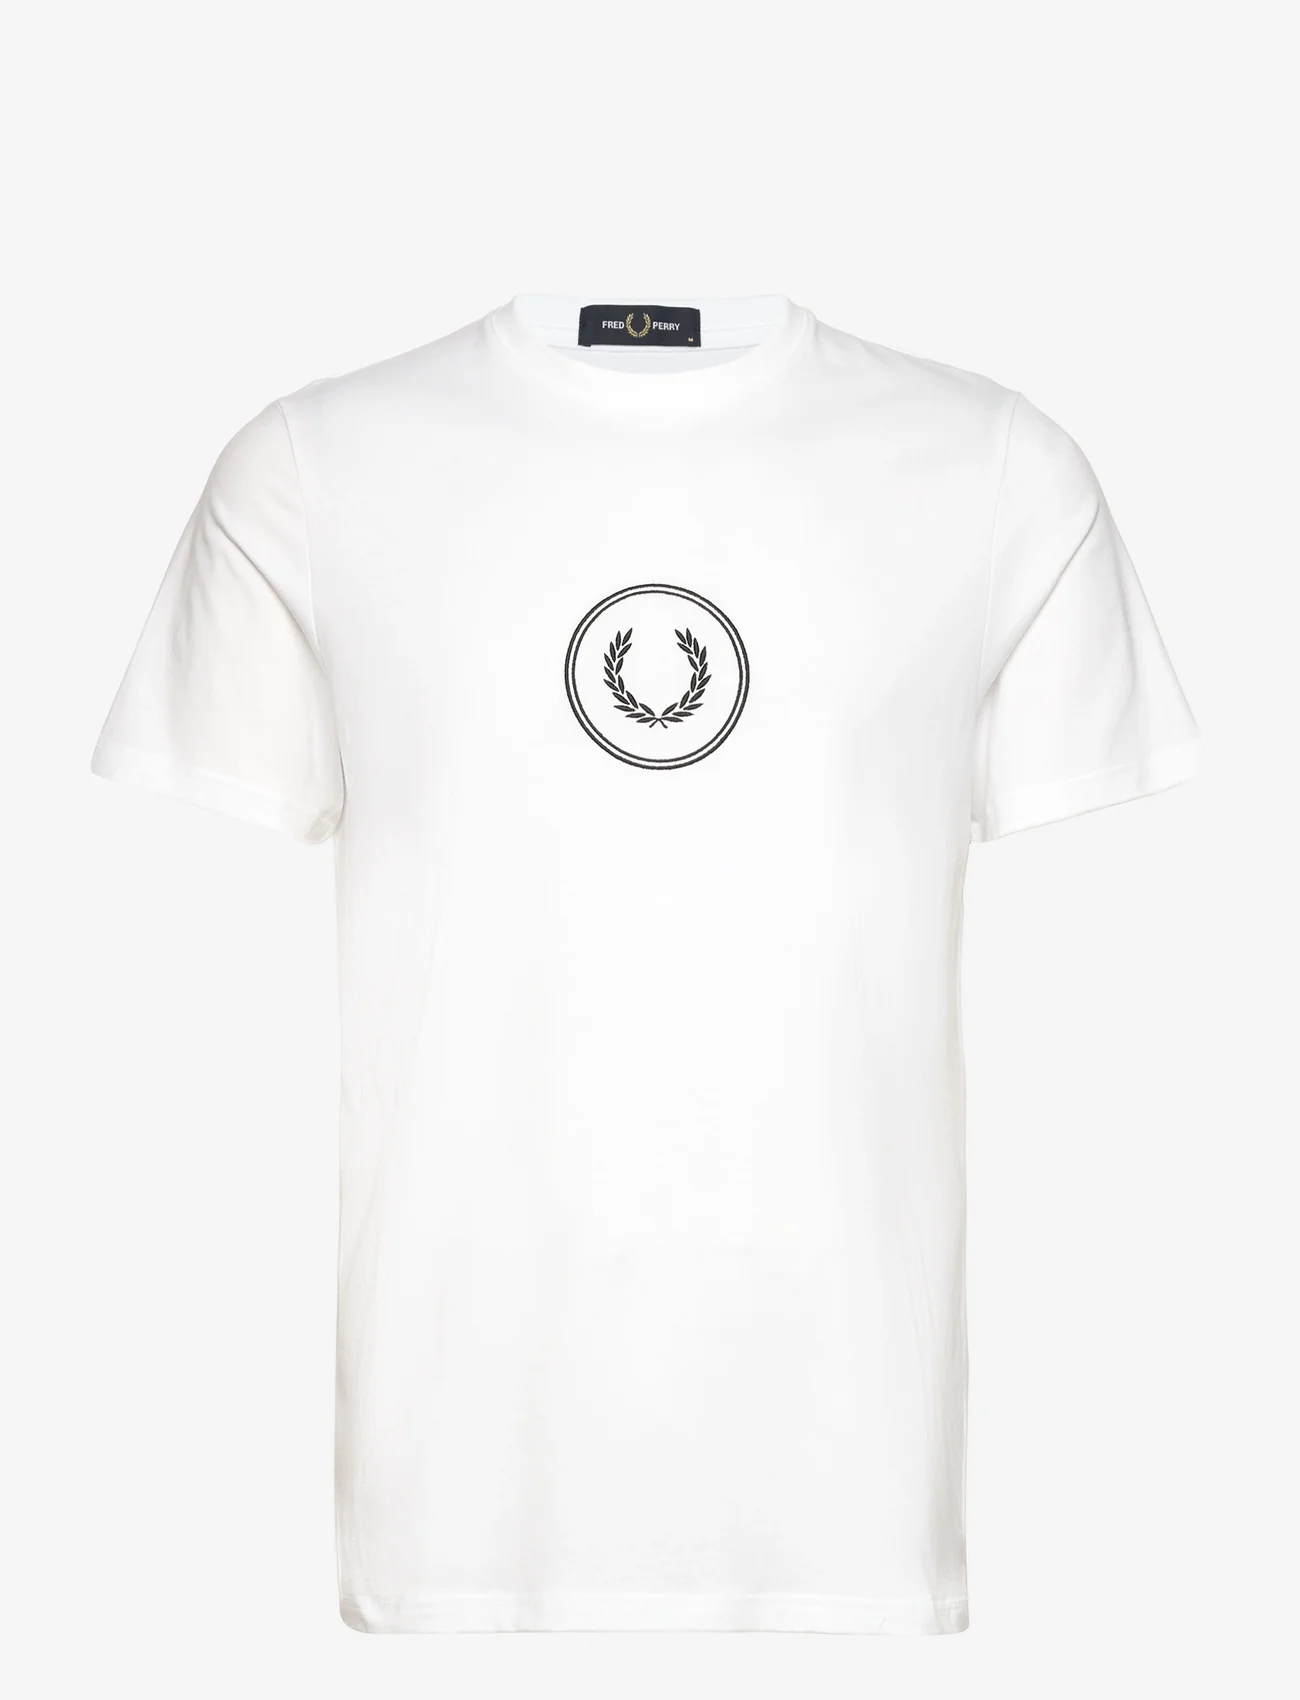 Fred Perry - CIRCLE BRANDING T-SHIRT - kortærmede t-shirts - white - 0